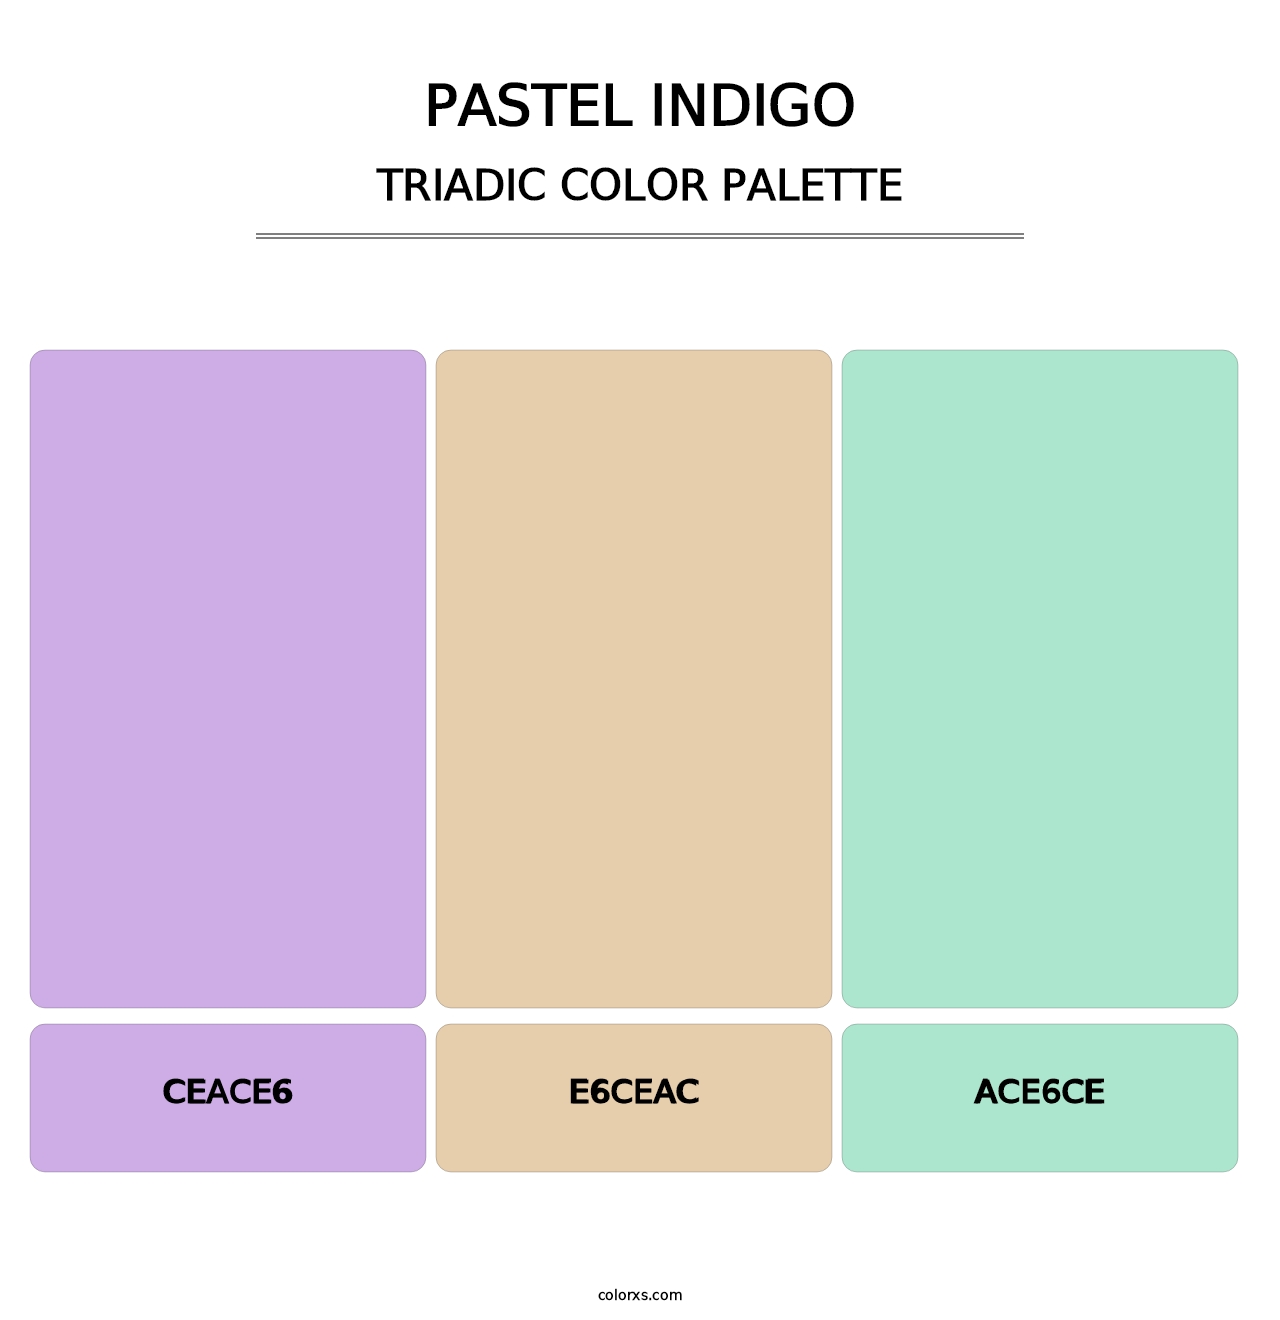 Pastel Indigo - Triadic Color Palette